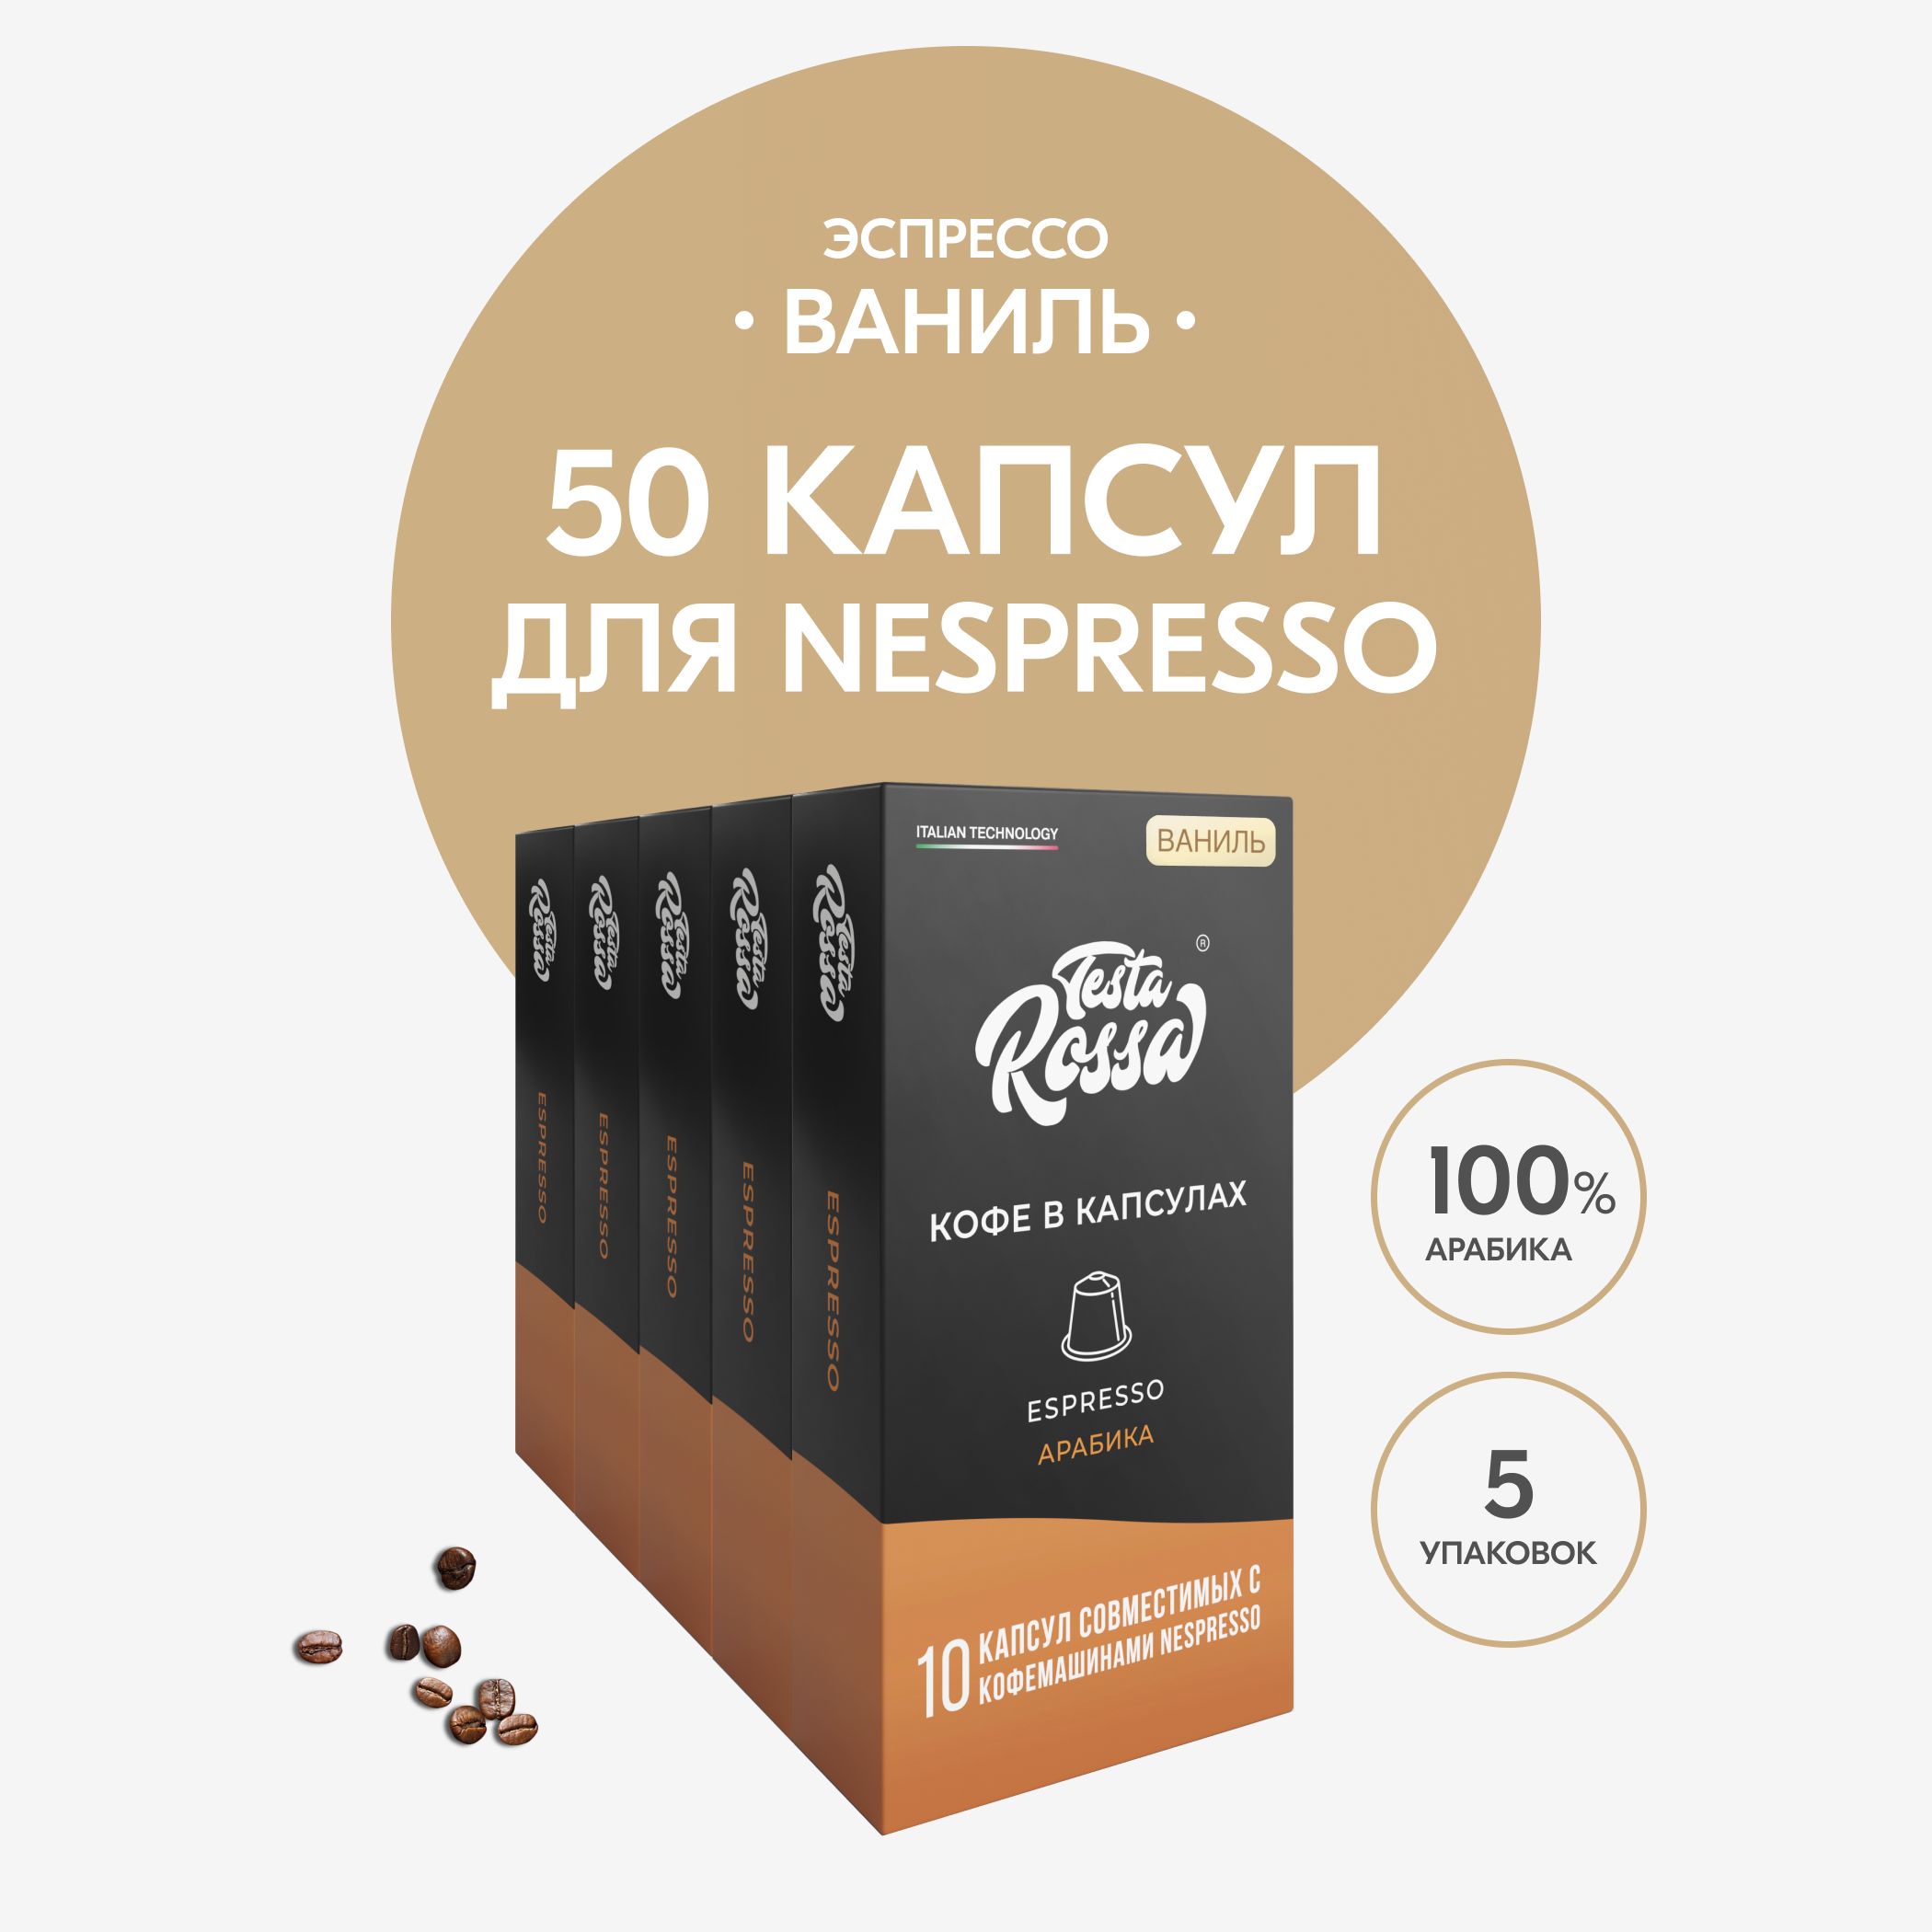 КофевкапсулахNespresso"ЭспрессоВАНИЛЬ",50шт.Капсульныйнеспрессодлякофемашины